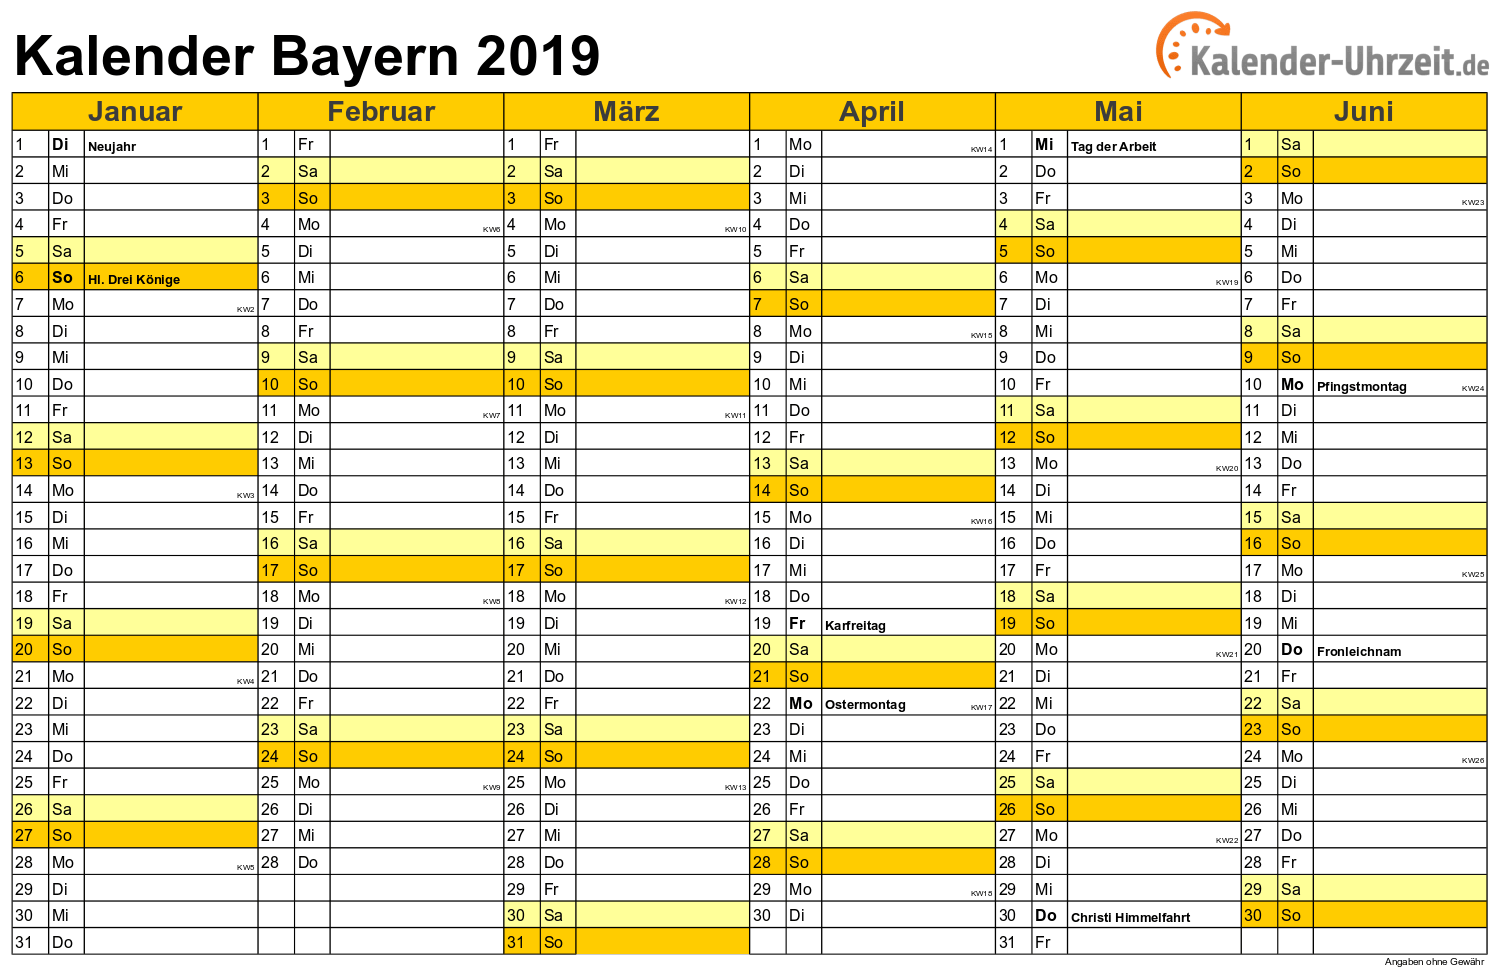 Bayern Kalender 2019 mit Feiertagen - quer-zweiseitig